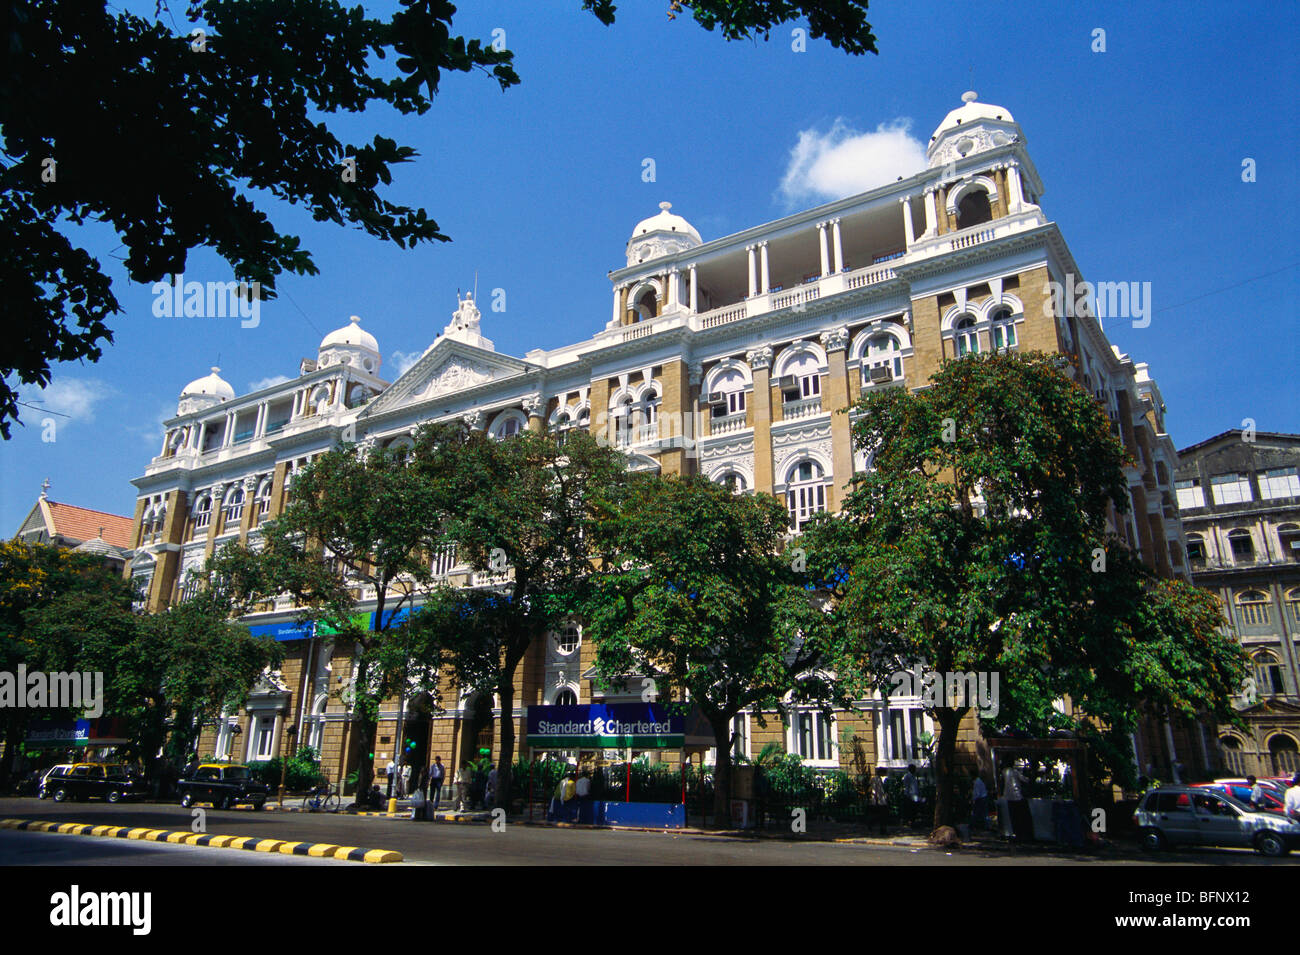 Standard Chartered Bank Old Historical Building Bombay Mumbai Maharashtra India Stock Photo Alamy